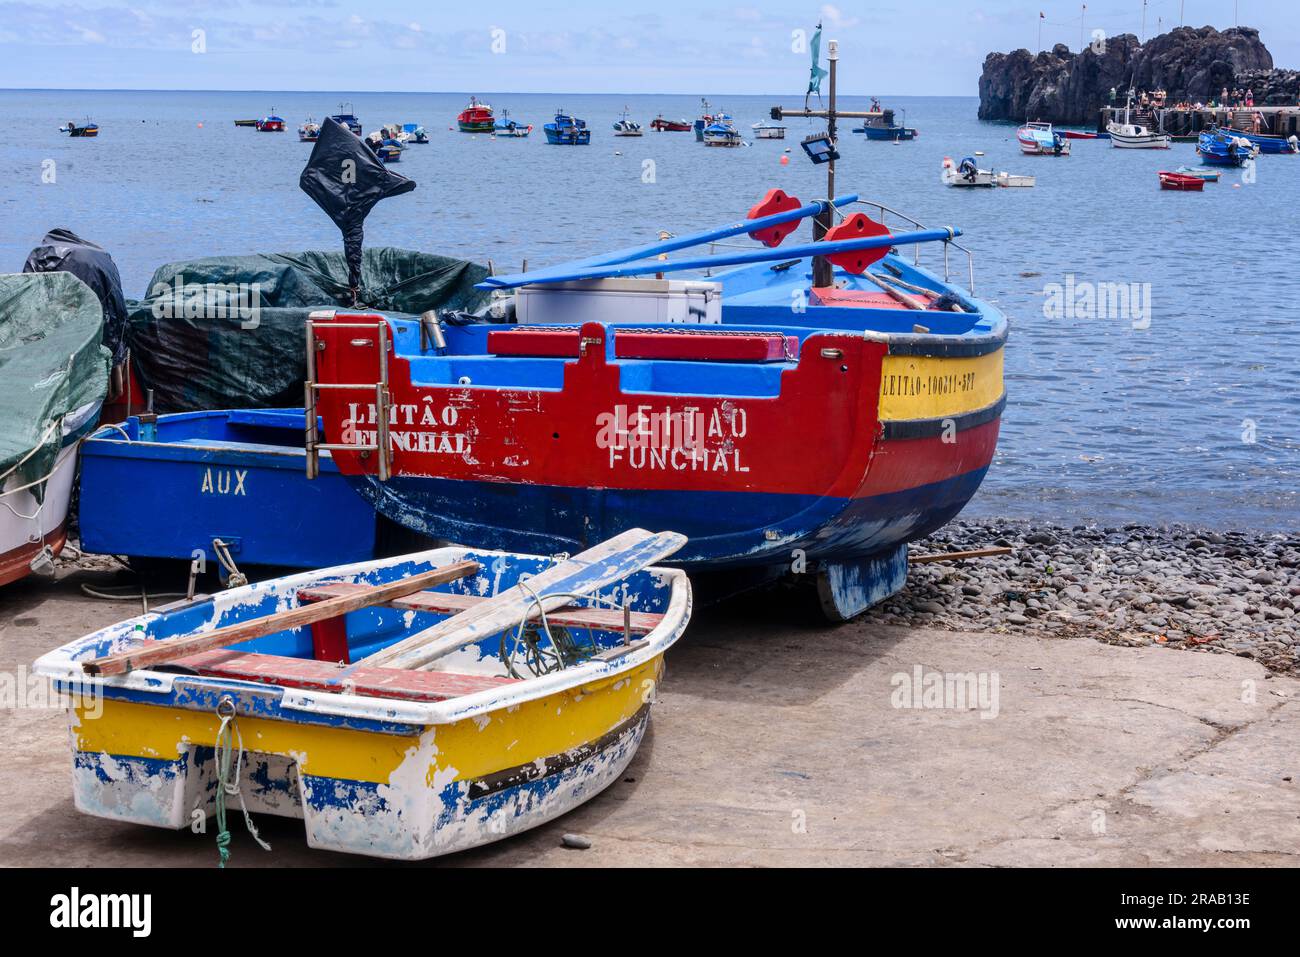 Bateaux de pêche et d'aviron colorés au port de Camera de Lobos, Madère Banque D'Images